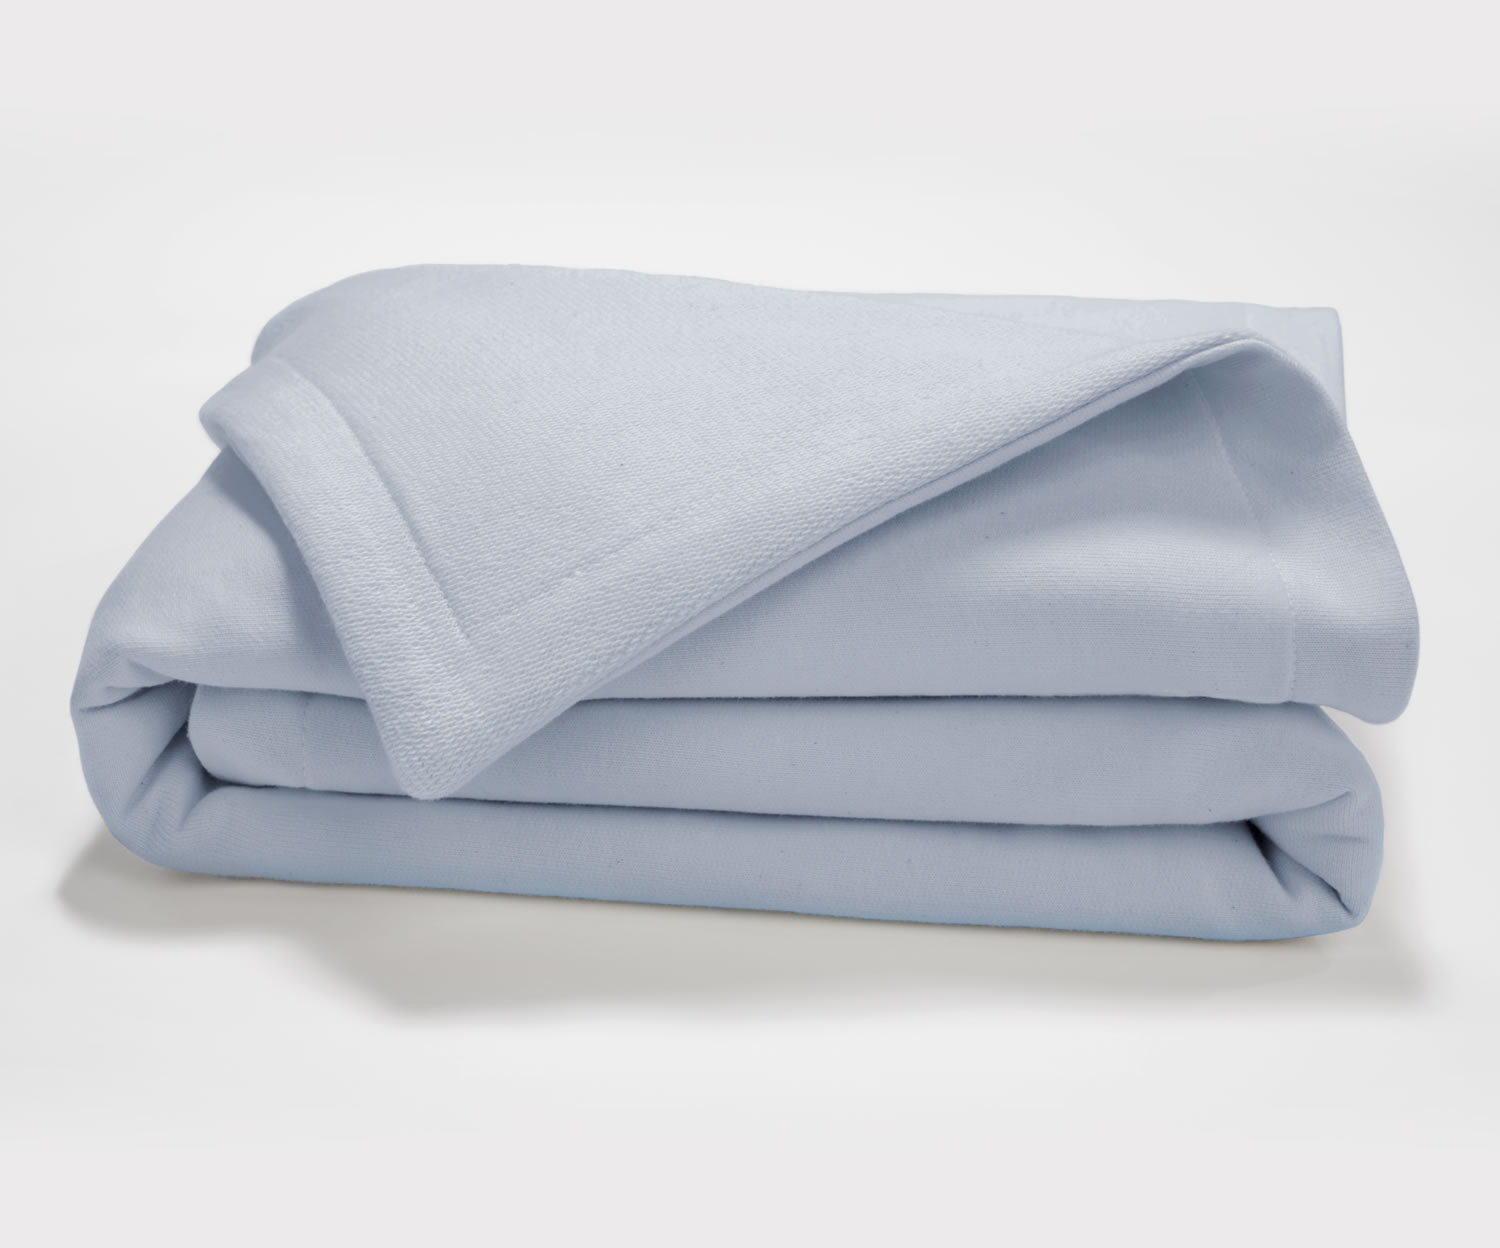 blanket clipart blue blanket